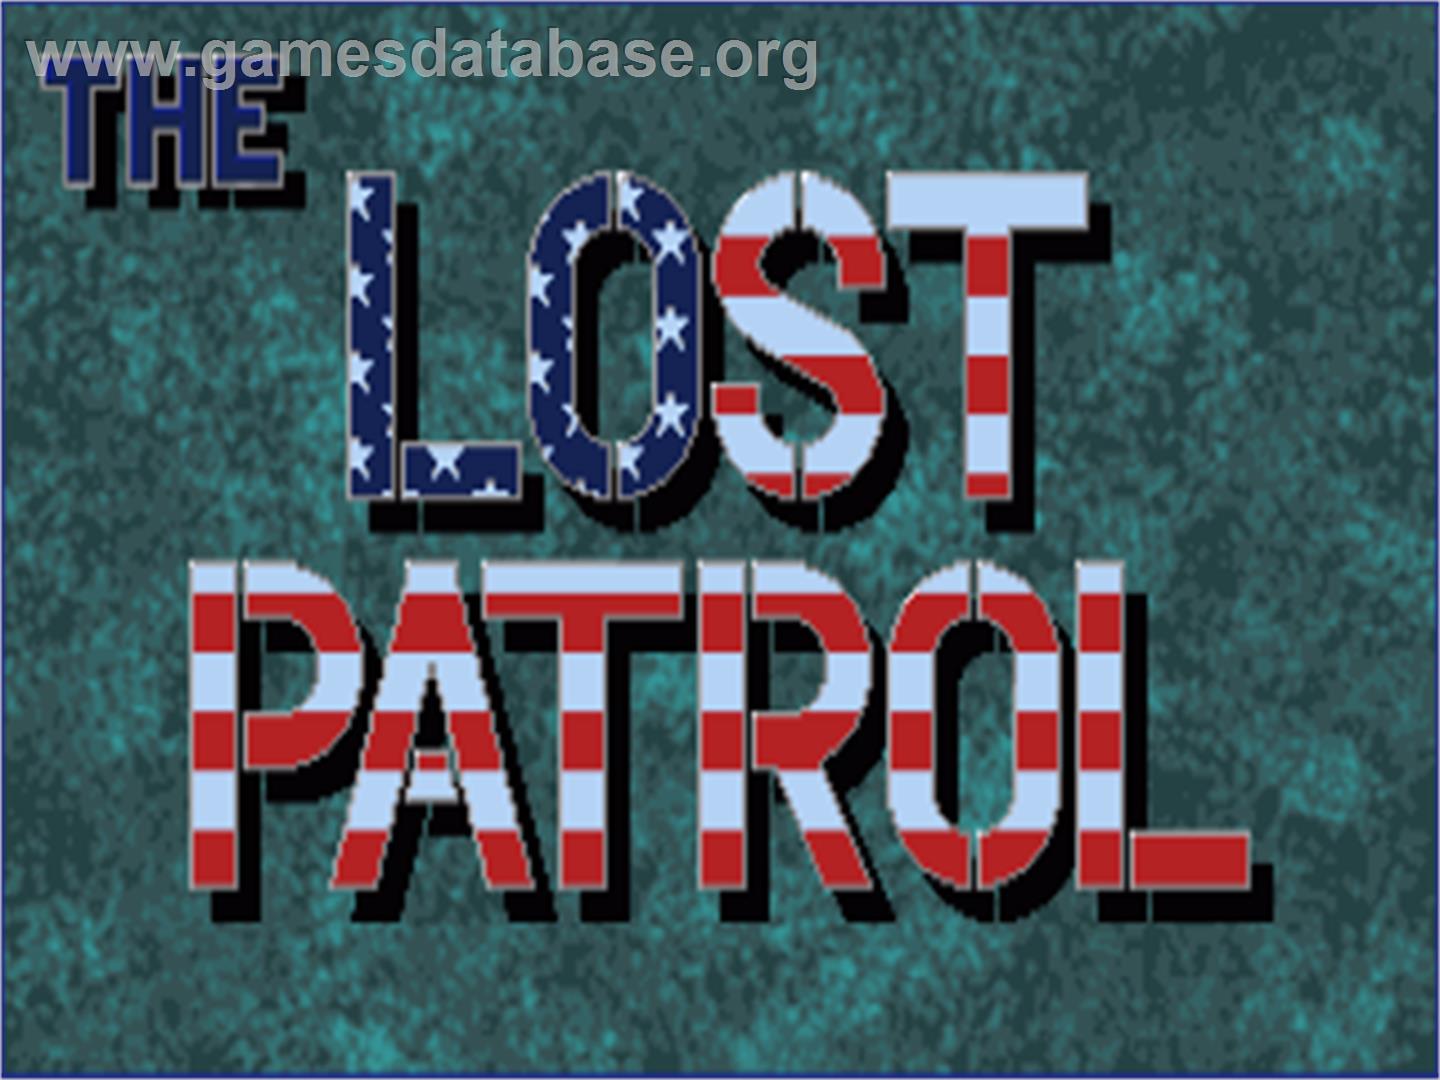 Lost Patrol - Commodore Amiga - Artwork - Title Screen